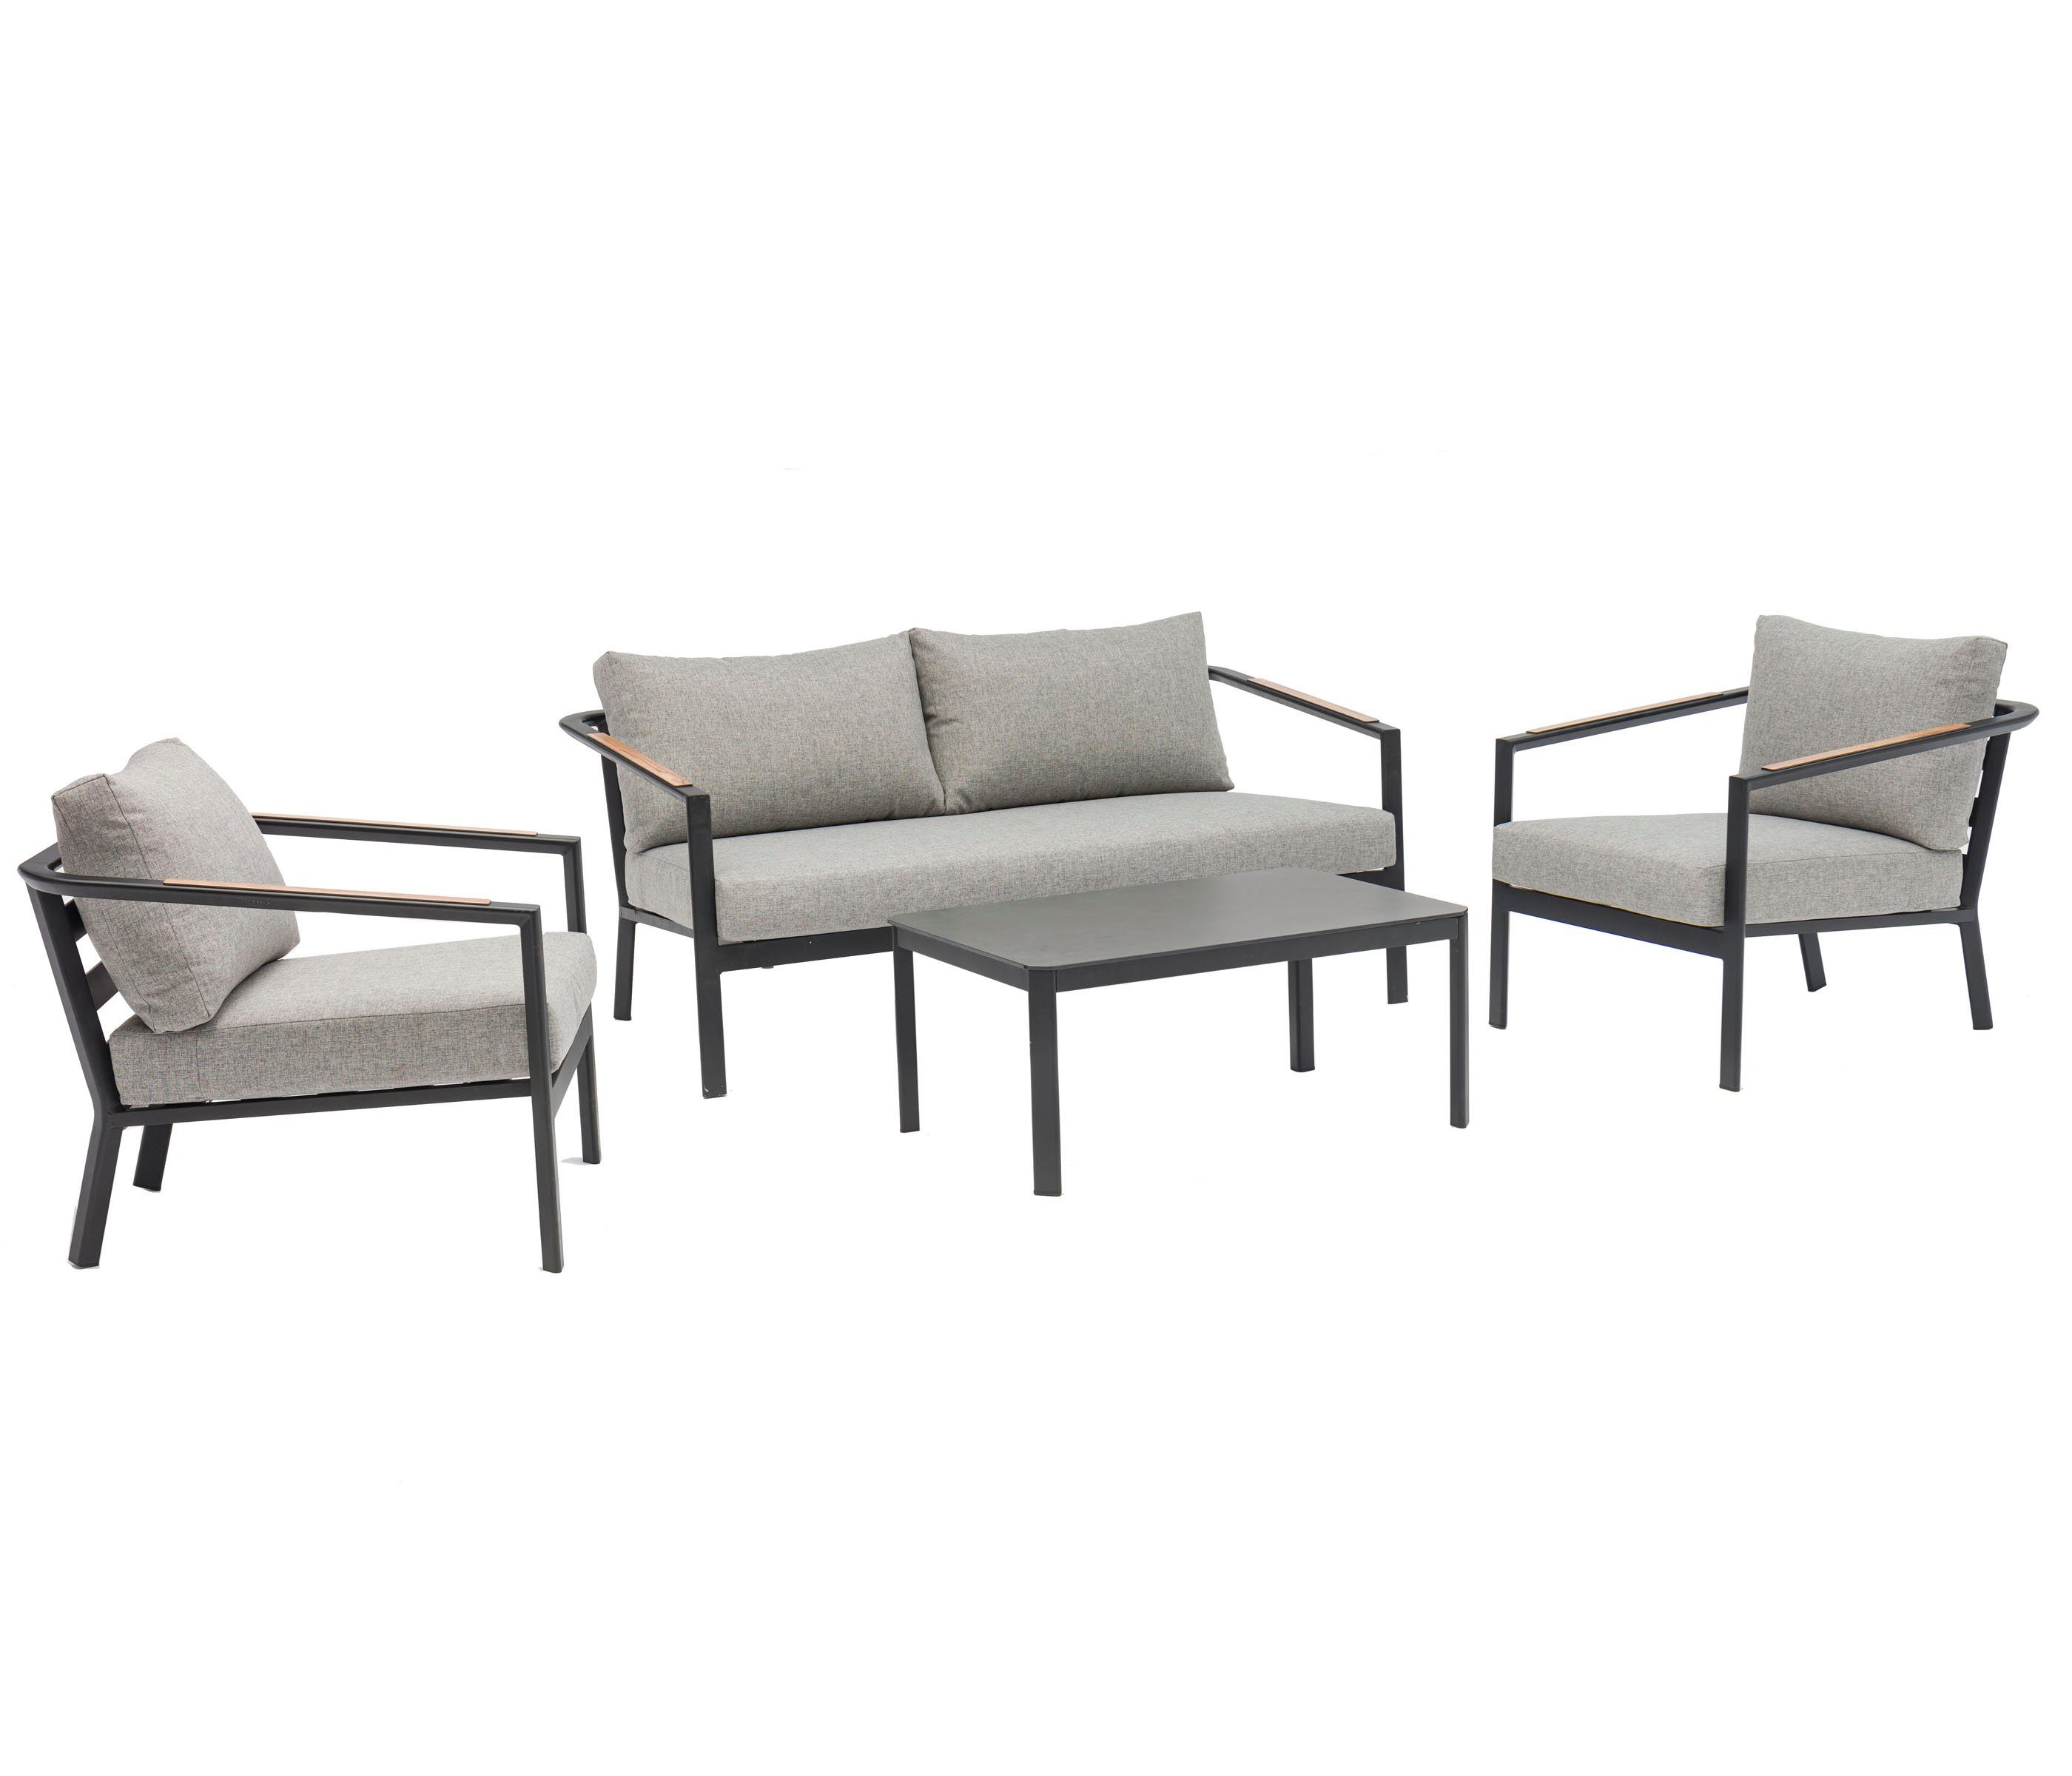 Dehner Gartentisch New York, 4-teilig, Aluminium/Polyester, moderne Sitzgarnitur mit Sofa, 2 Sesseln und Tisch, inkl. Polster